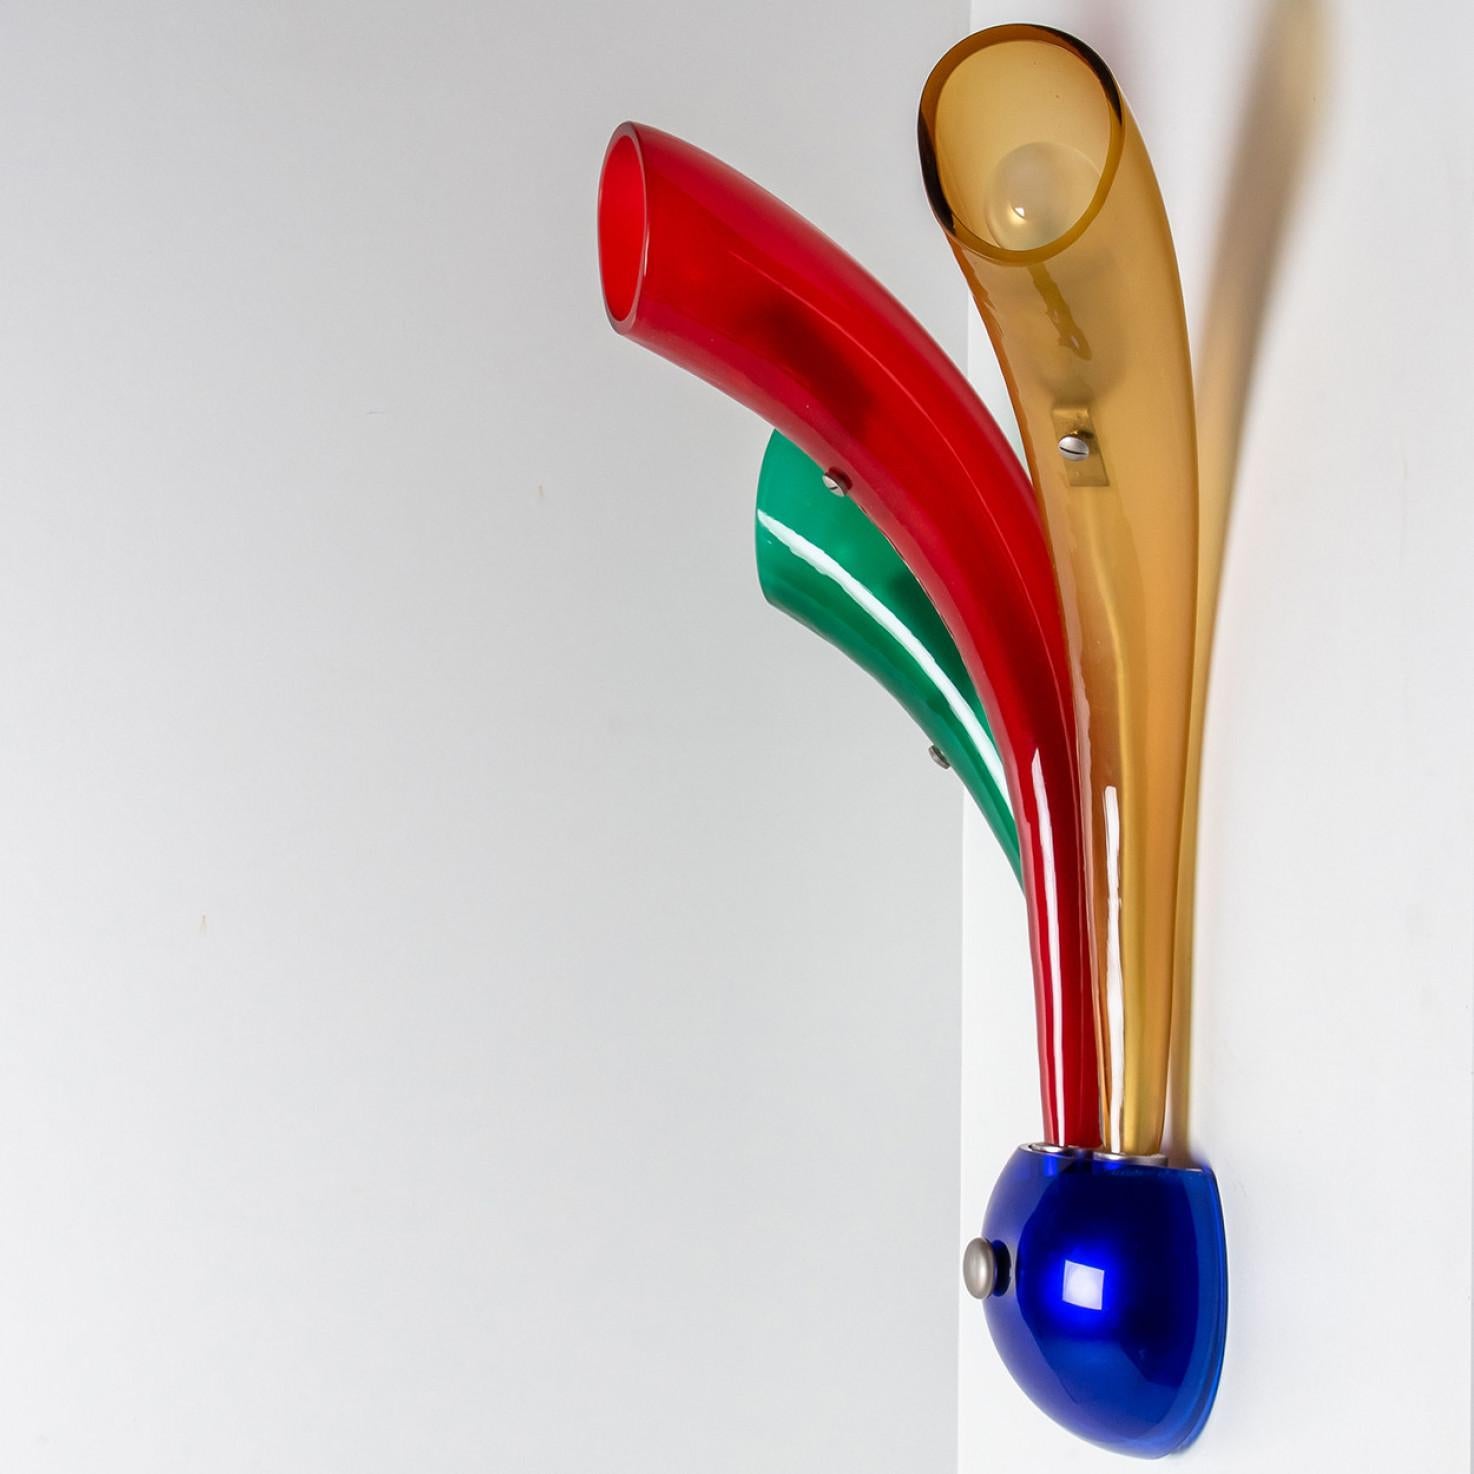 Wunderschöne mehrfarbige Murano-Glasleuchte, hergestellt in Murano, Italien 1980.

Mit Originalitätsnachweis (siehe Bilder).

In sehr gutem Vintage-Zustand. Jede Leuchte benötigt 3X E14 Glühbirnen (je max. 40 Watt).

 

